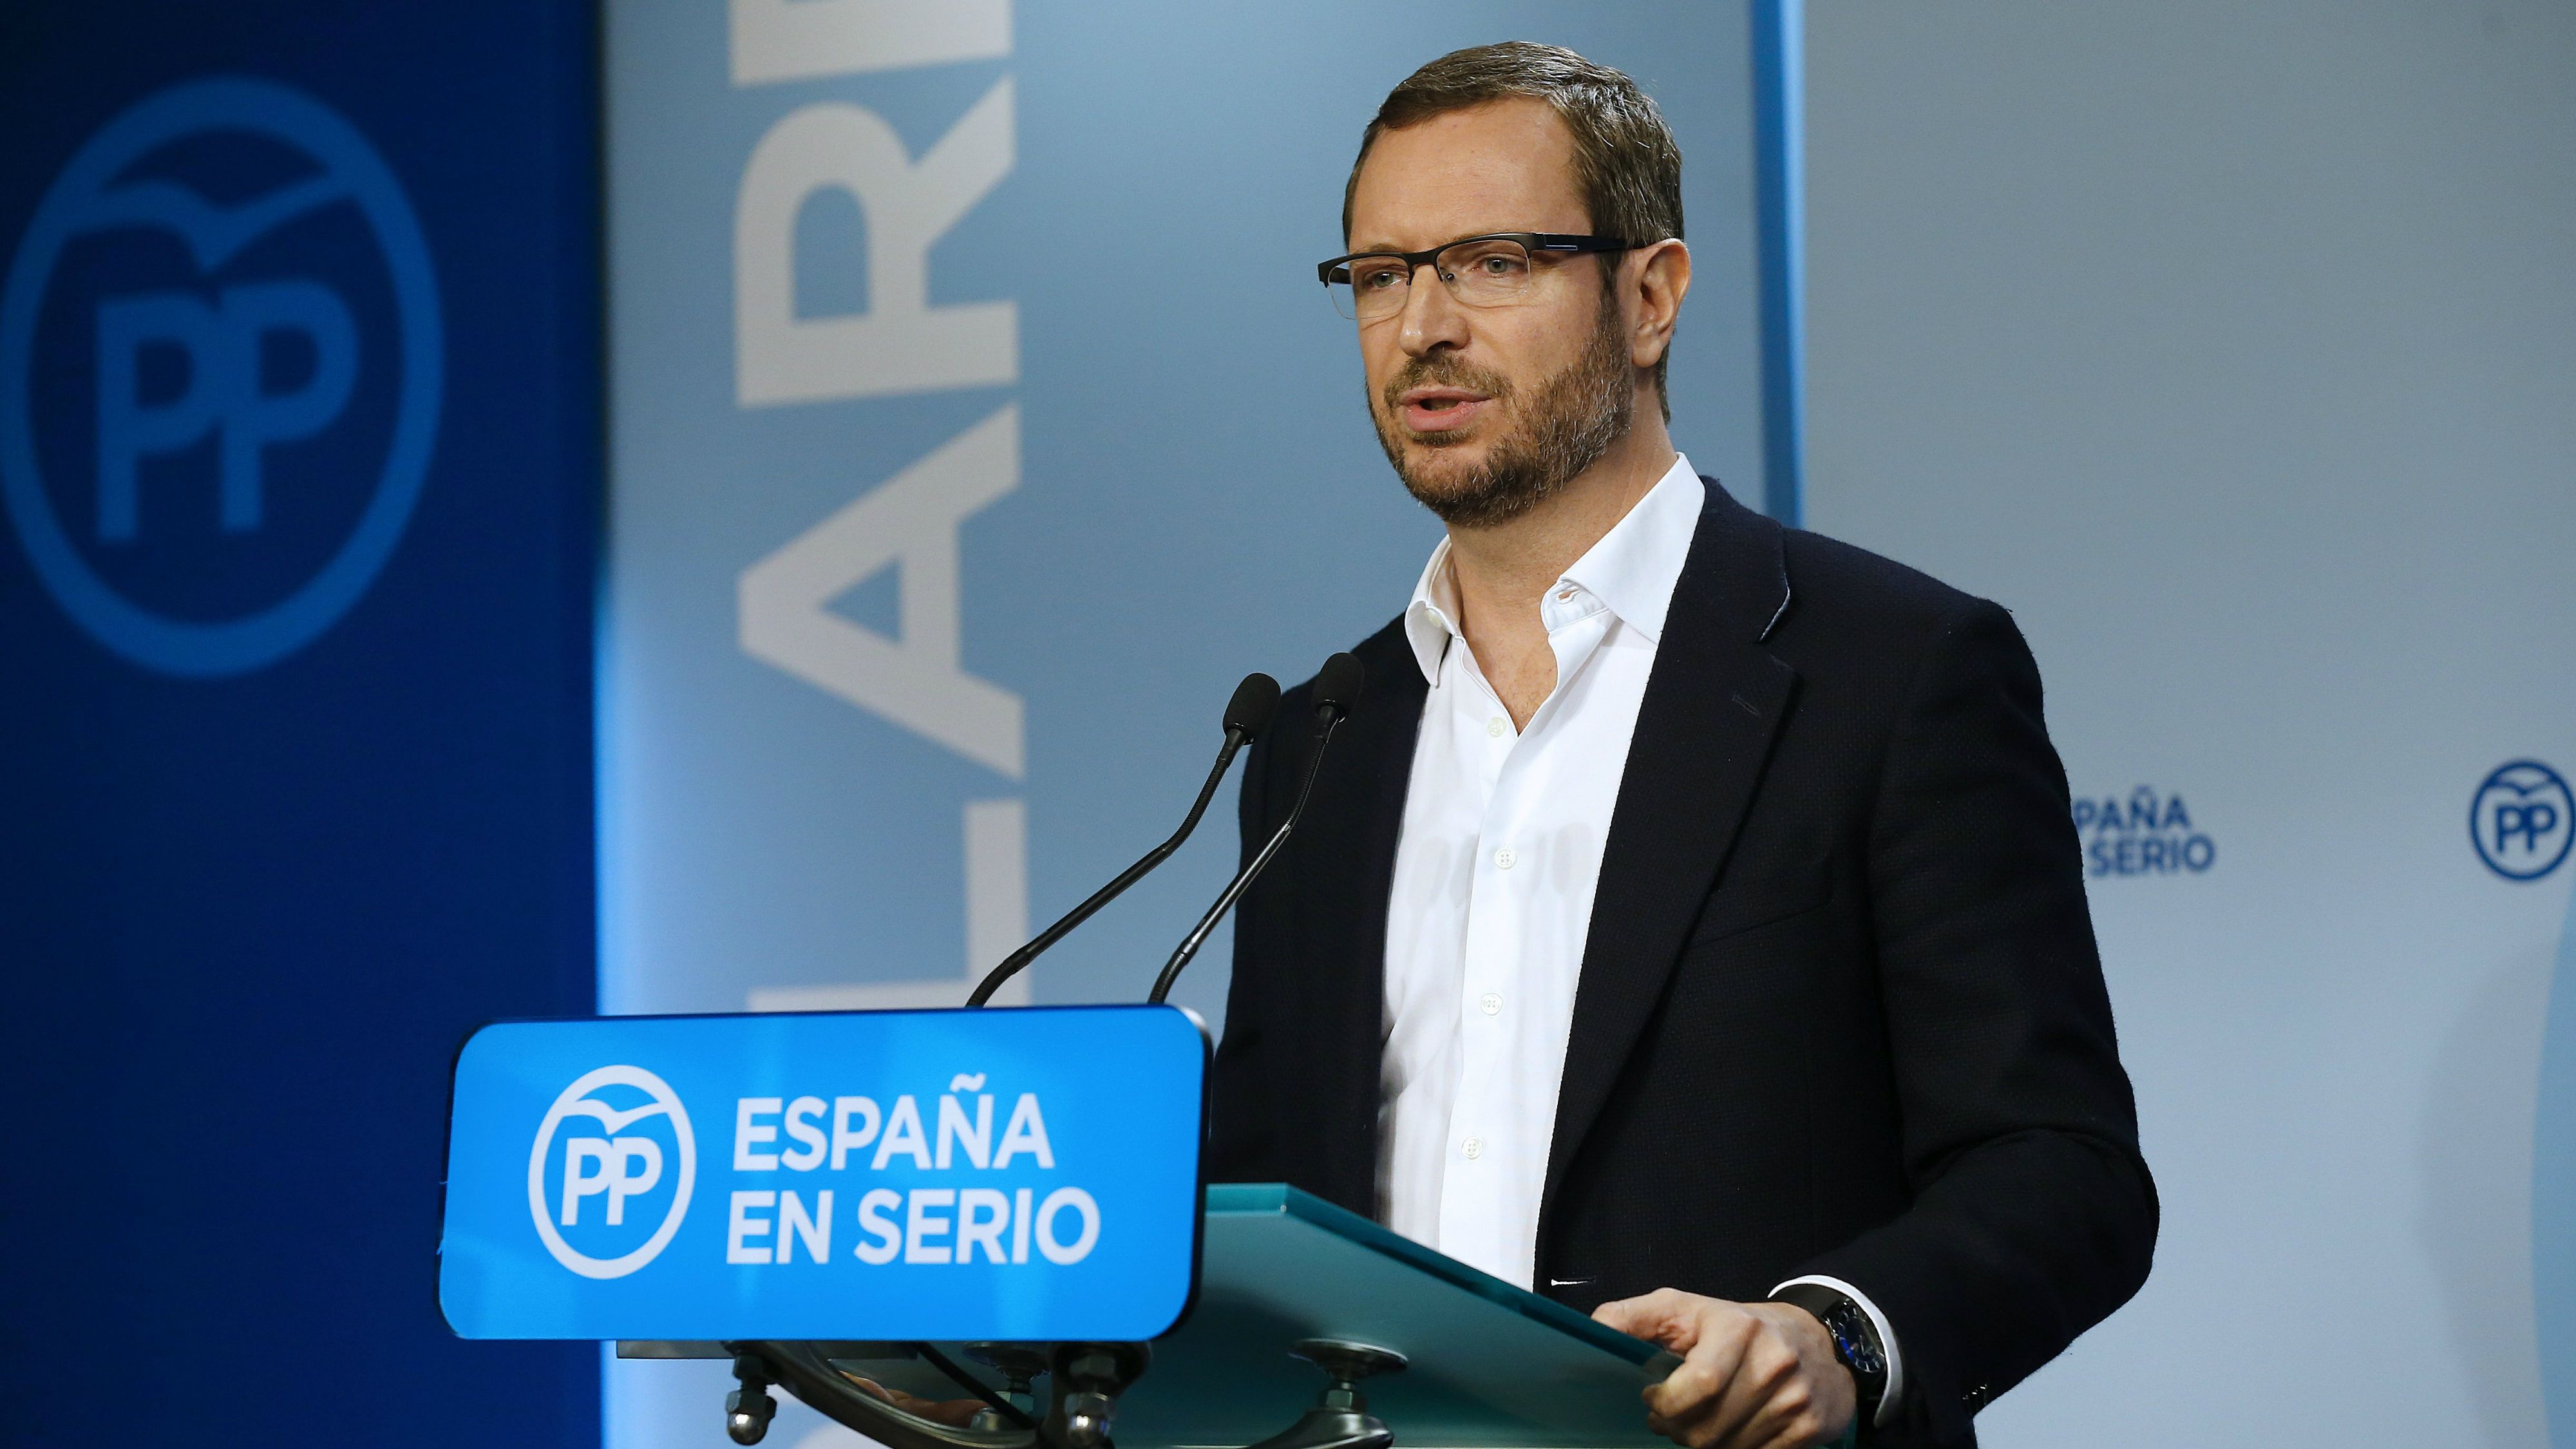 El PP no descarta que Rajoy torni a declinar la investidura